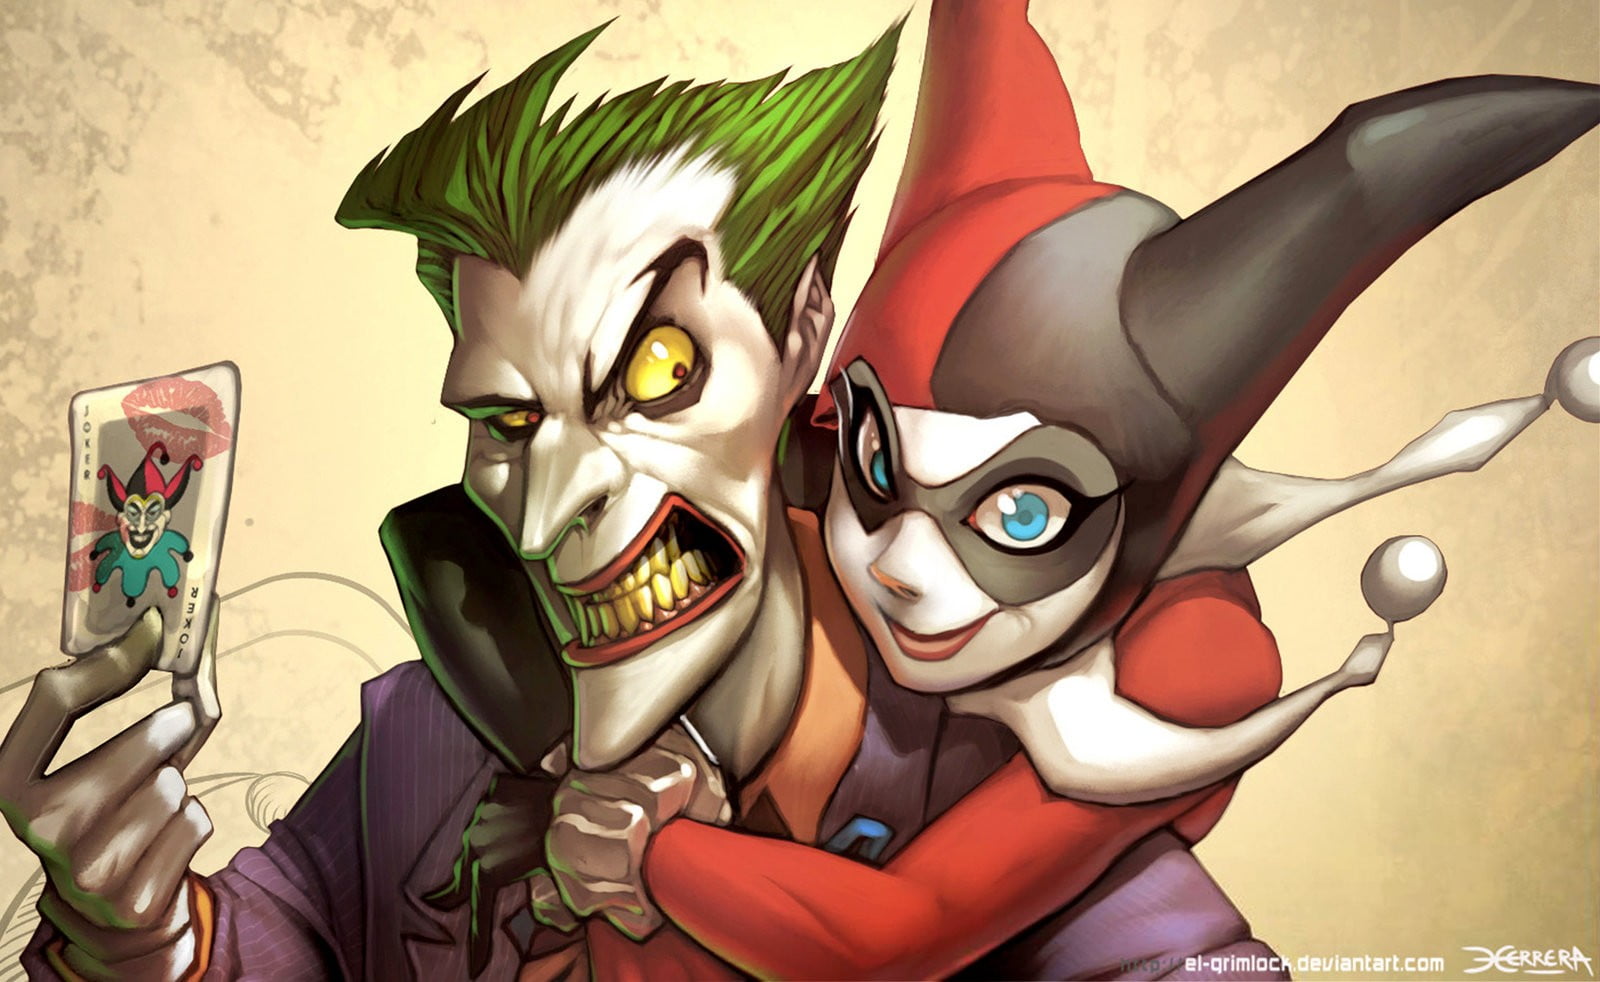 2560x1440 resolution | Joker and Harley Quin cartoon illustration HD ...